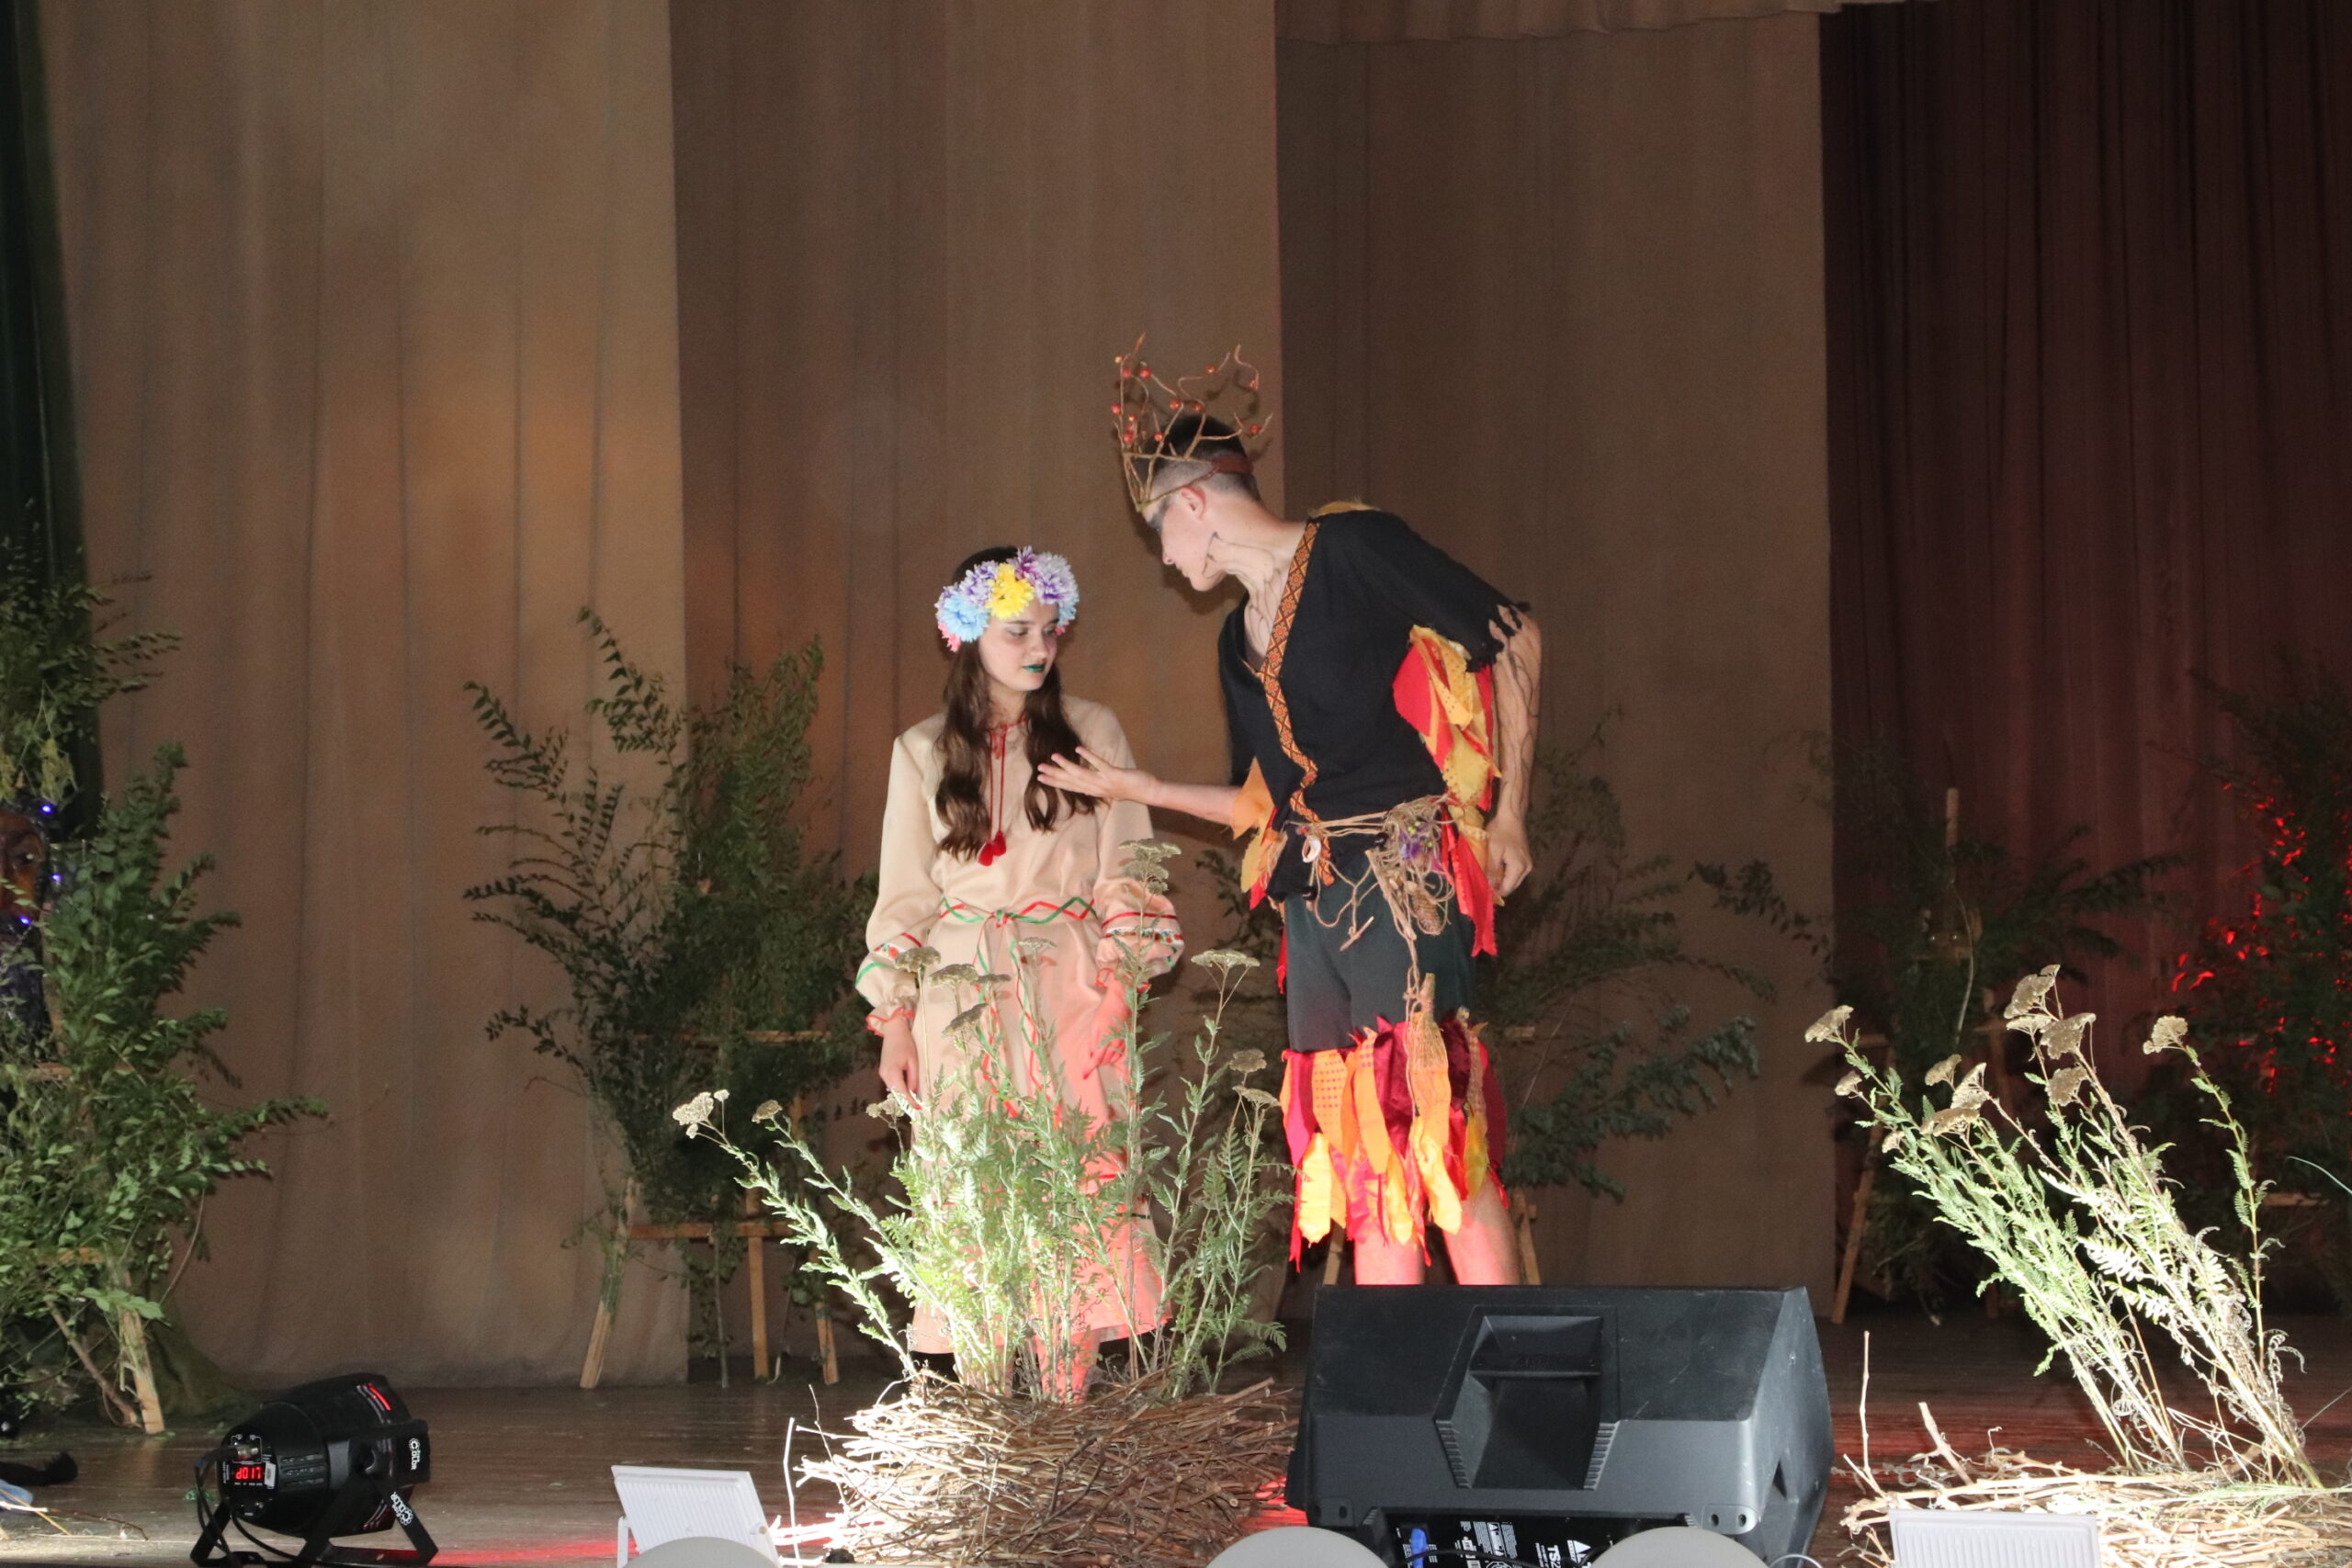 Ярко и эмоционально: в Болградской общине завершился театральный сезон, посвященный ВСУ